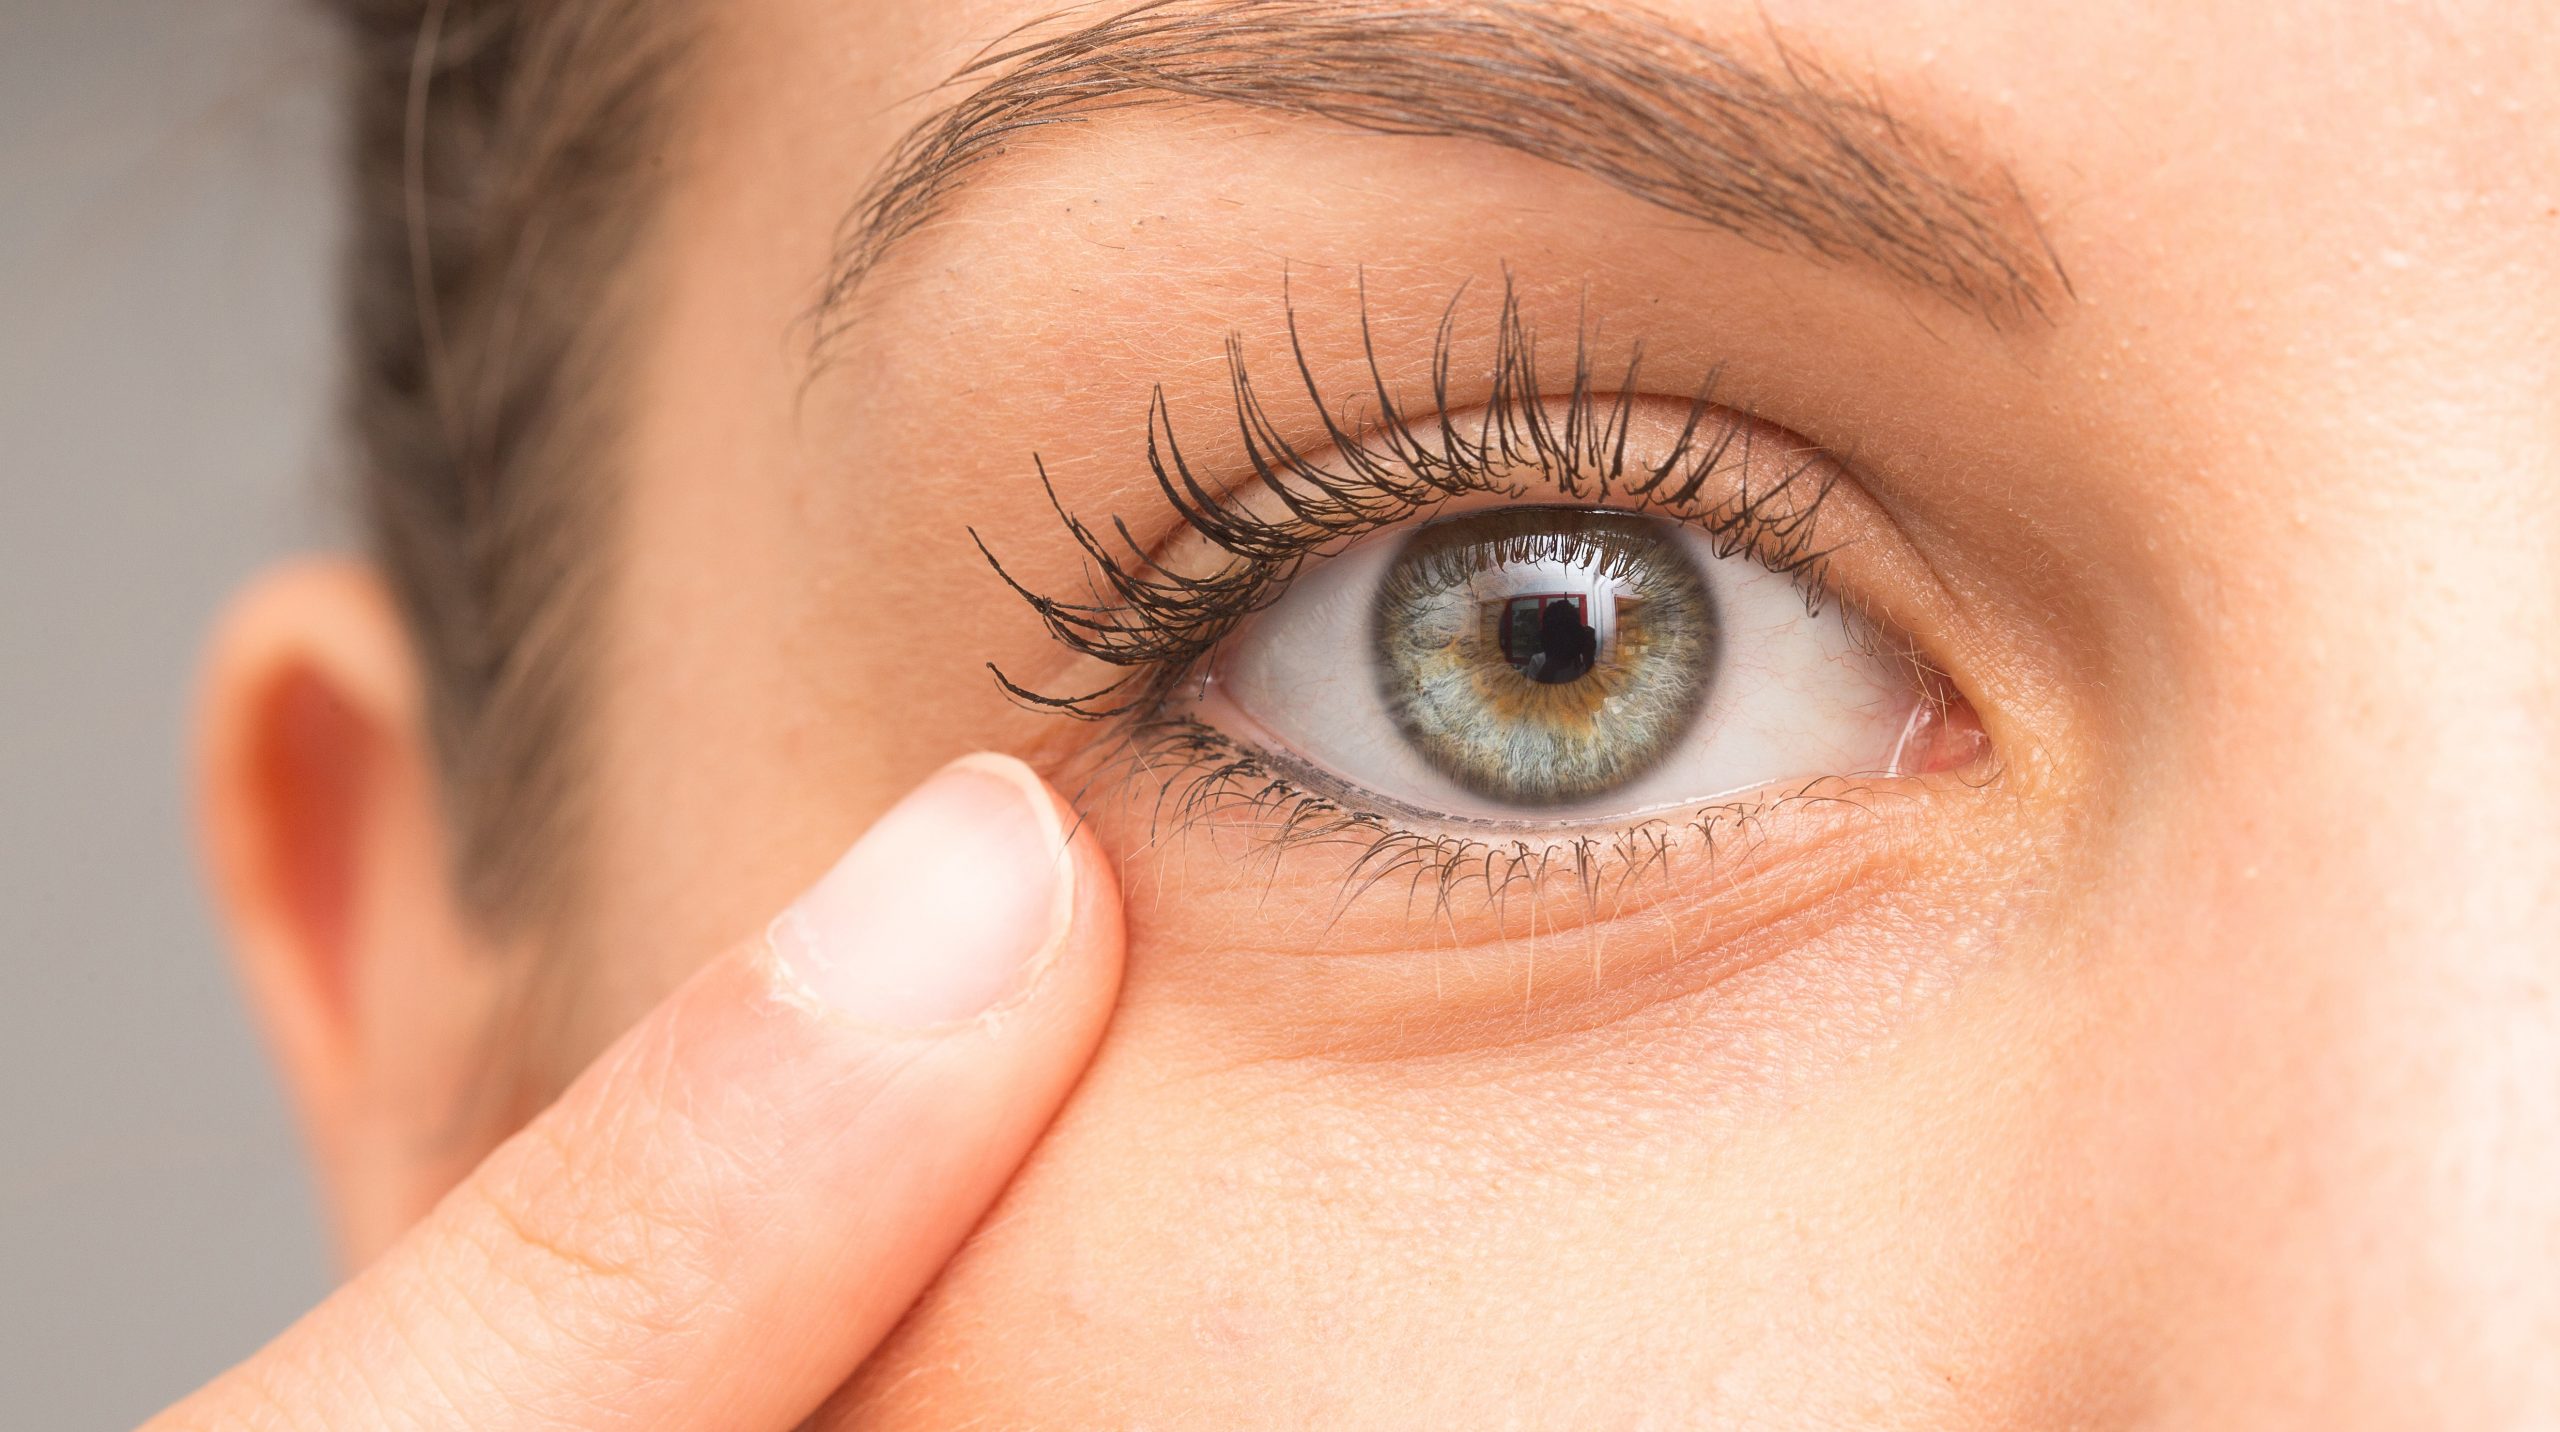 Cuidar la vista y evita enfermedades - CinfaSalud